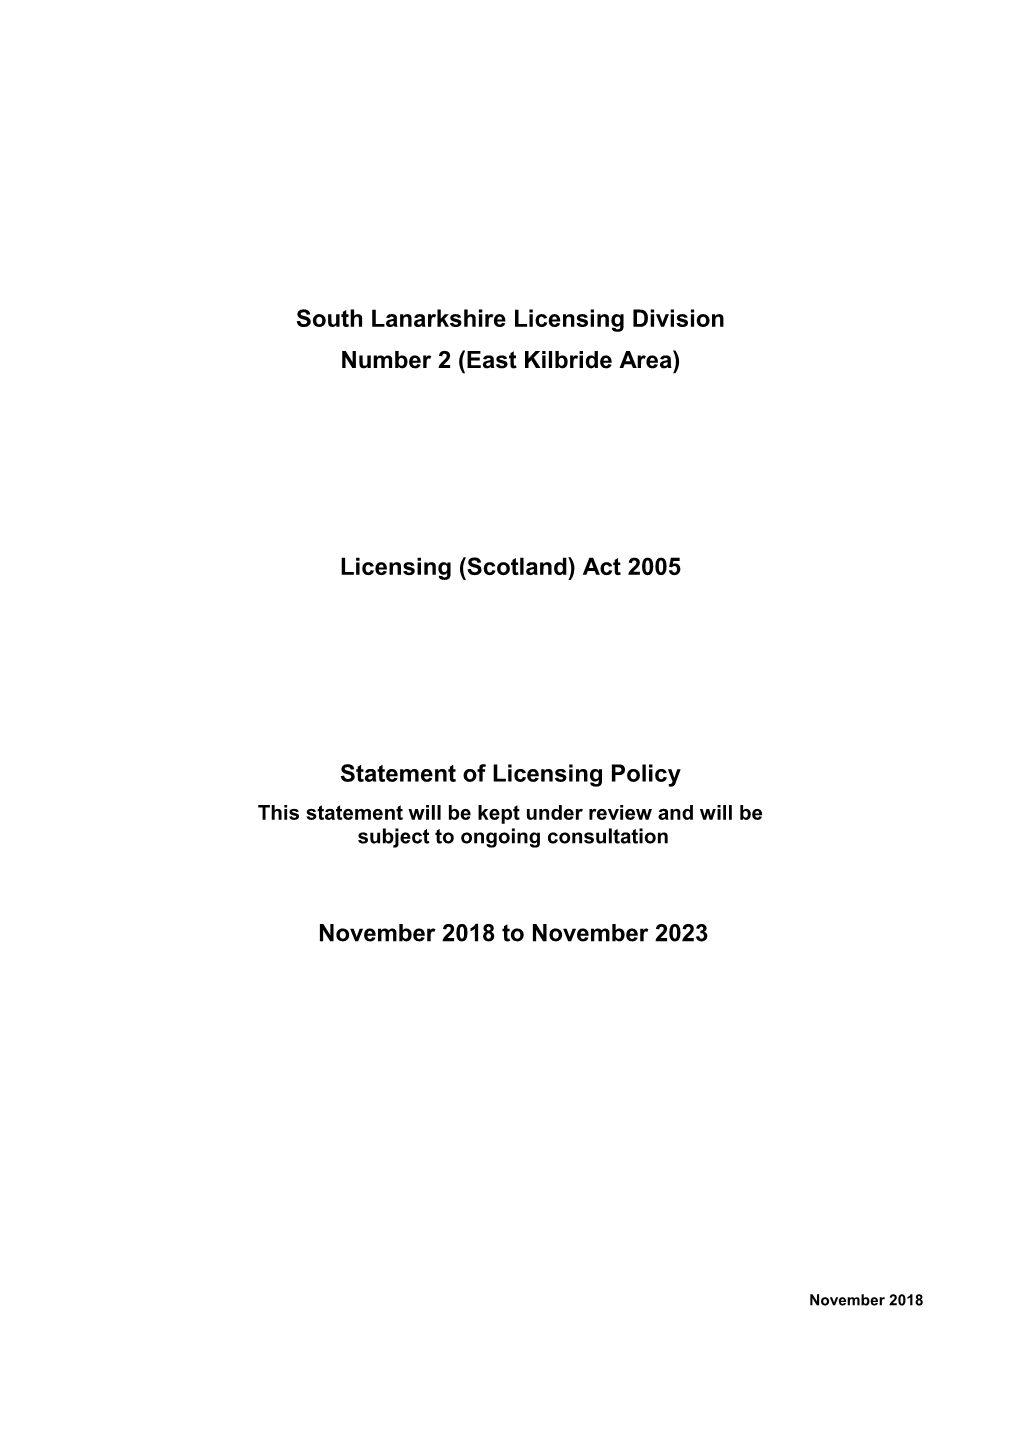 South Lanarkshire Licensing Division Number 2 (East Kilbride Area)